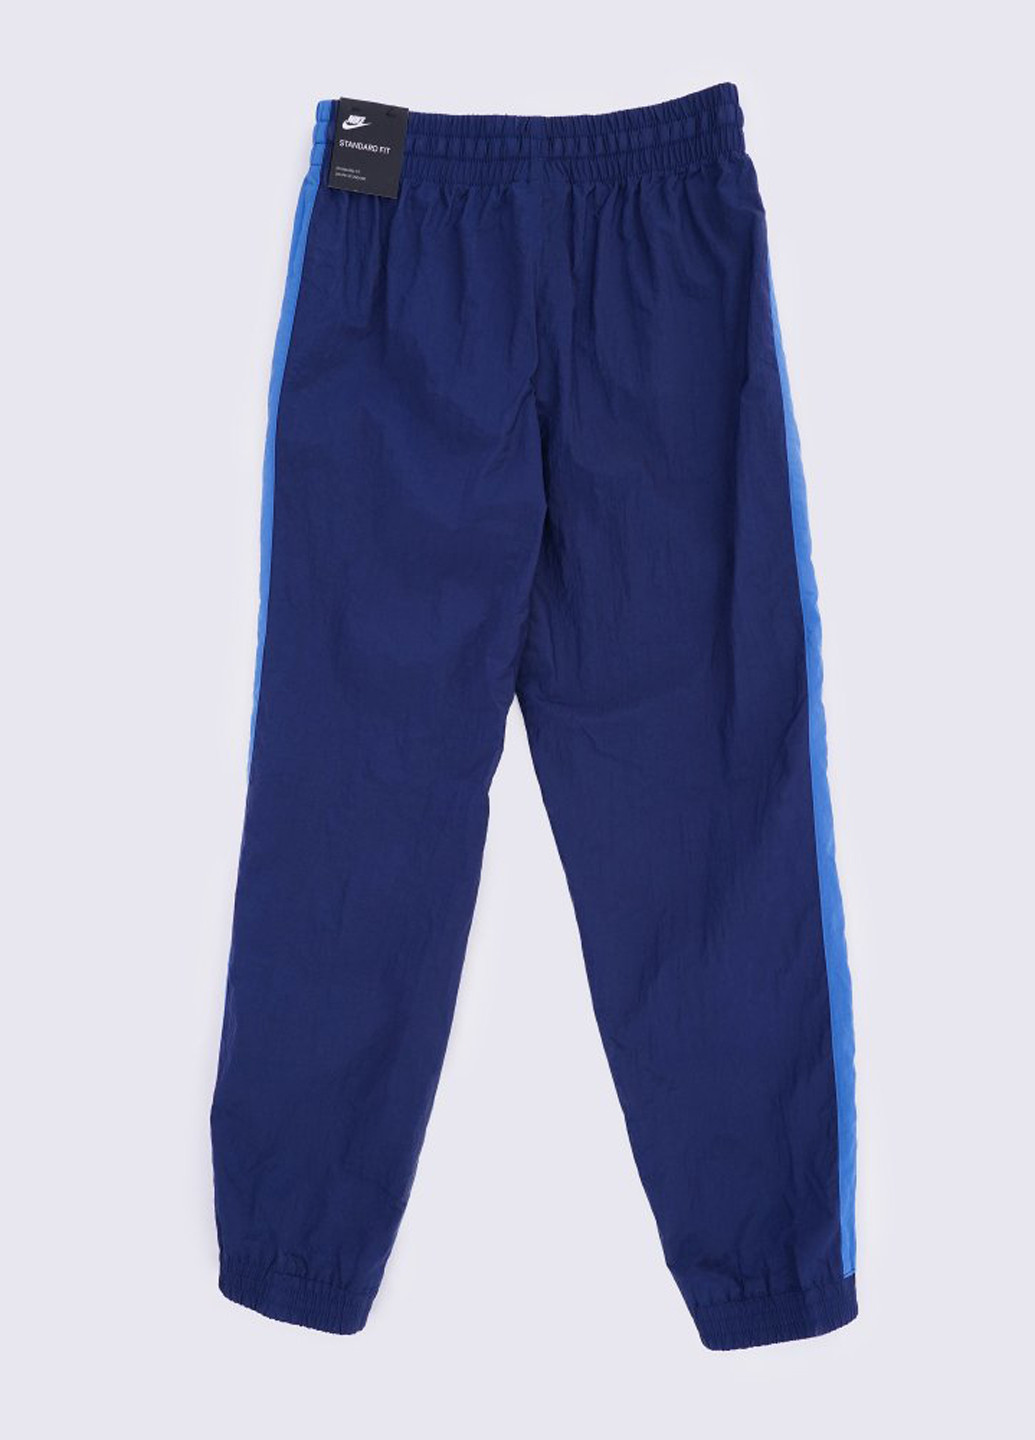 Синій демісезонний костюм (вітровка, брюки) Nike B Nsw Woven Track Suit